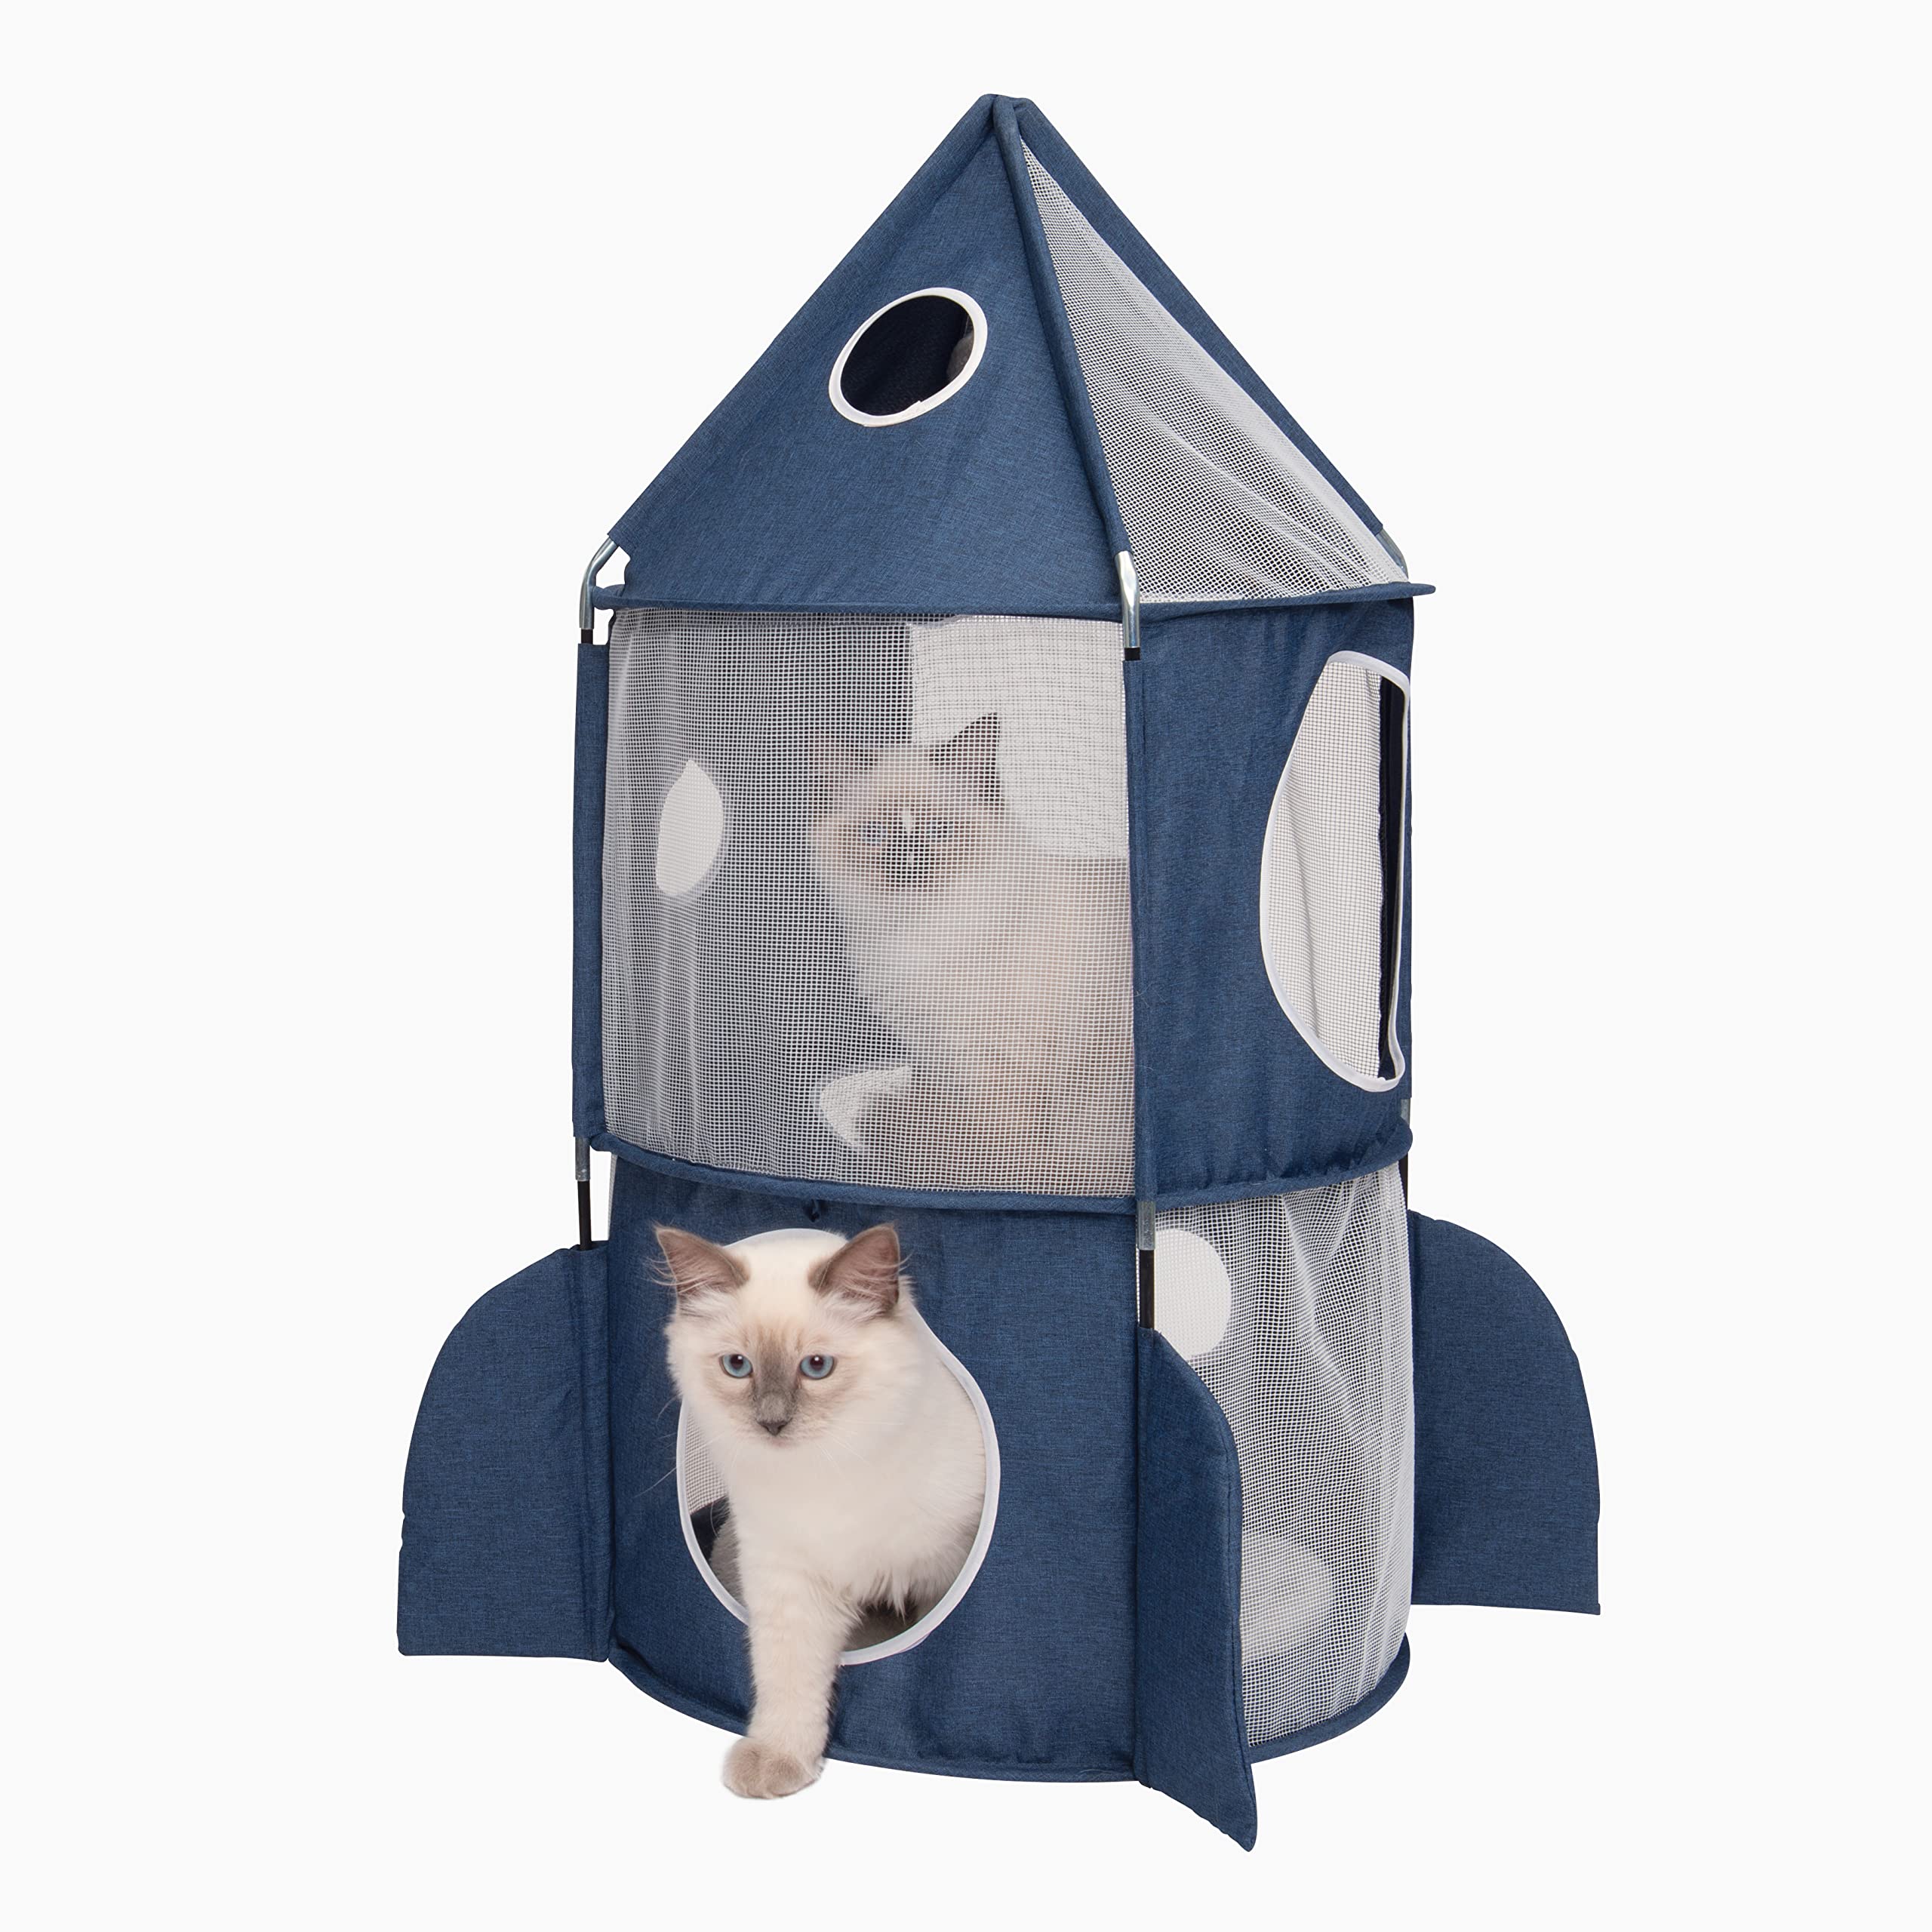 Catit 42001 Vesper Turm, in Raketenform, mit Schlafkissen, für Katzen, blau